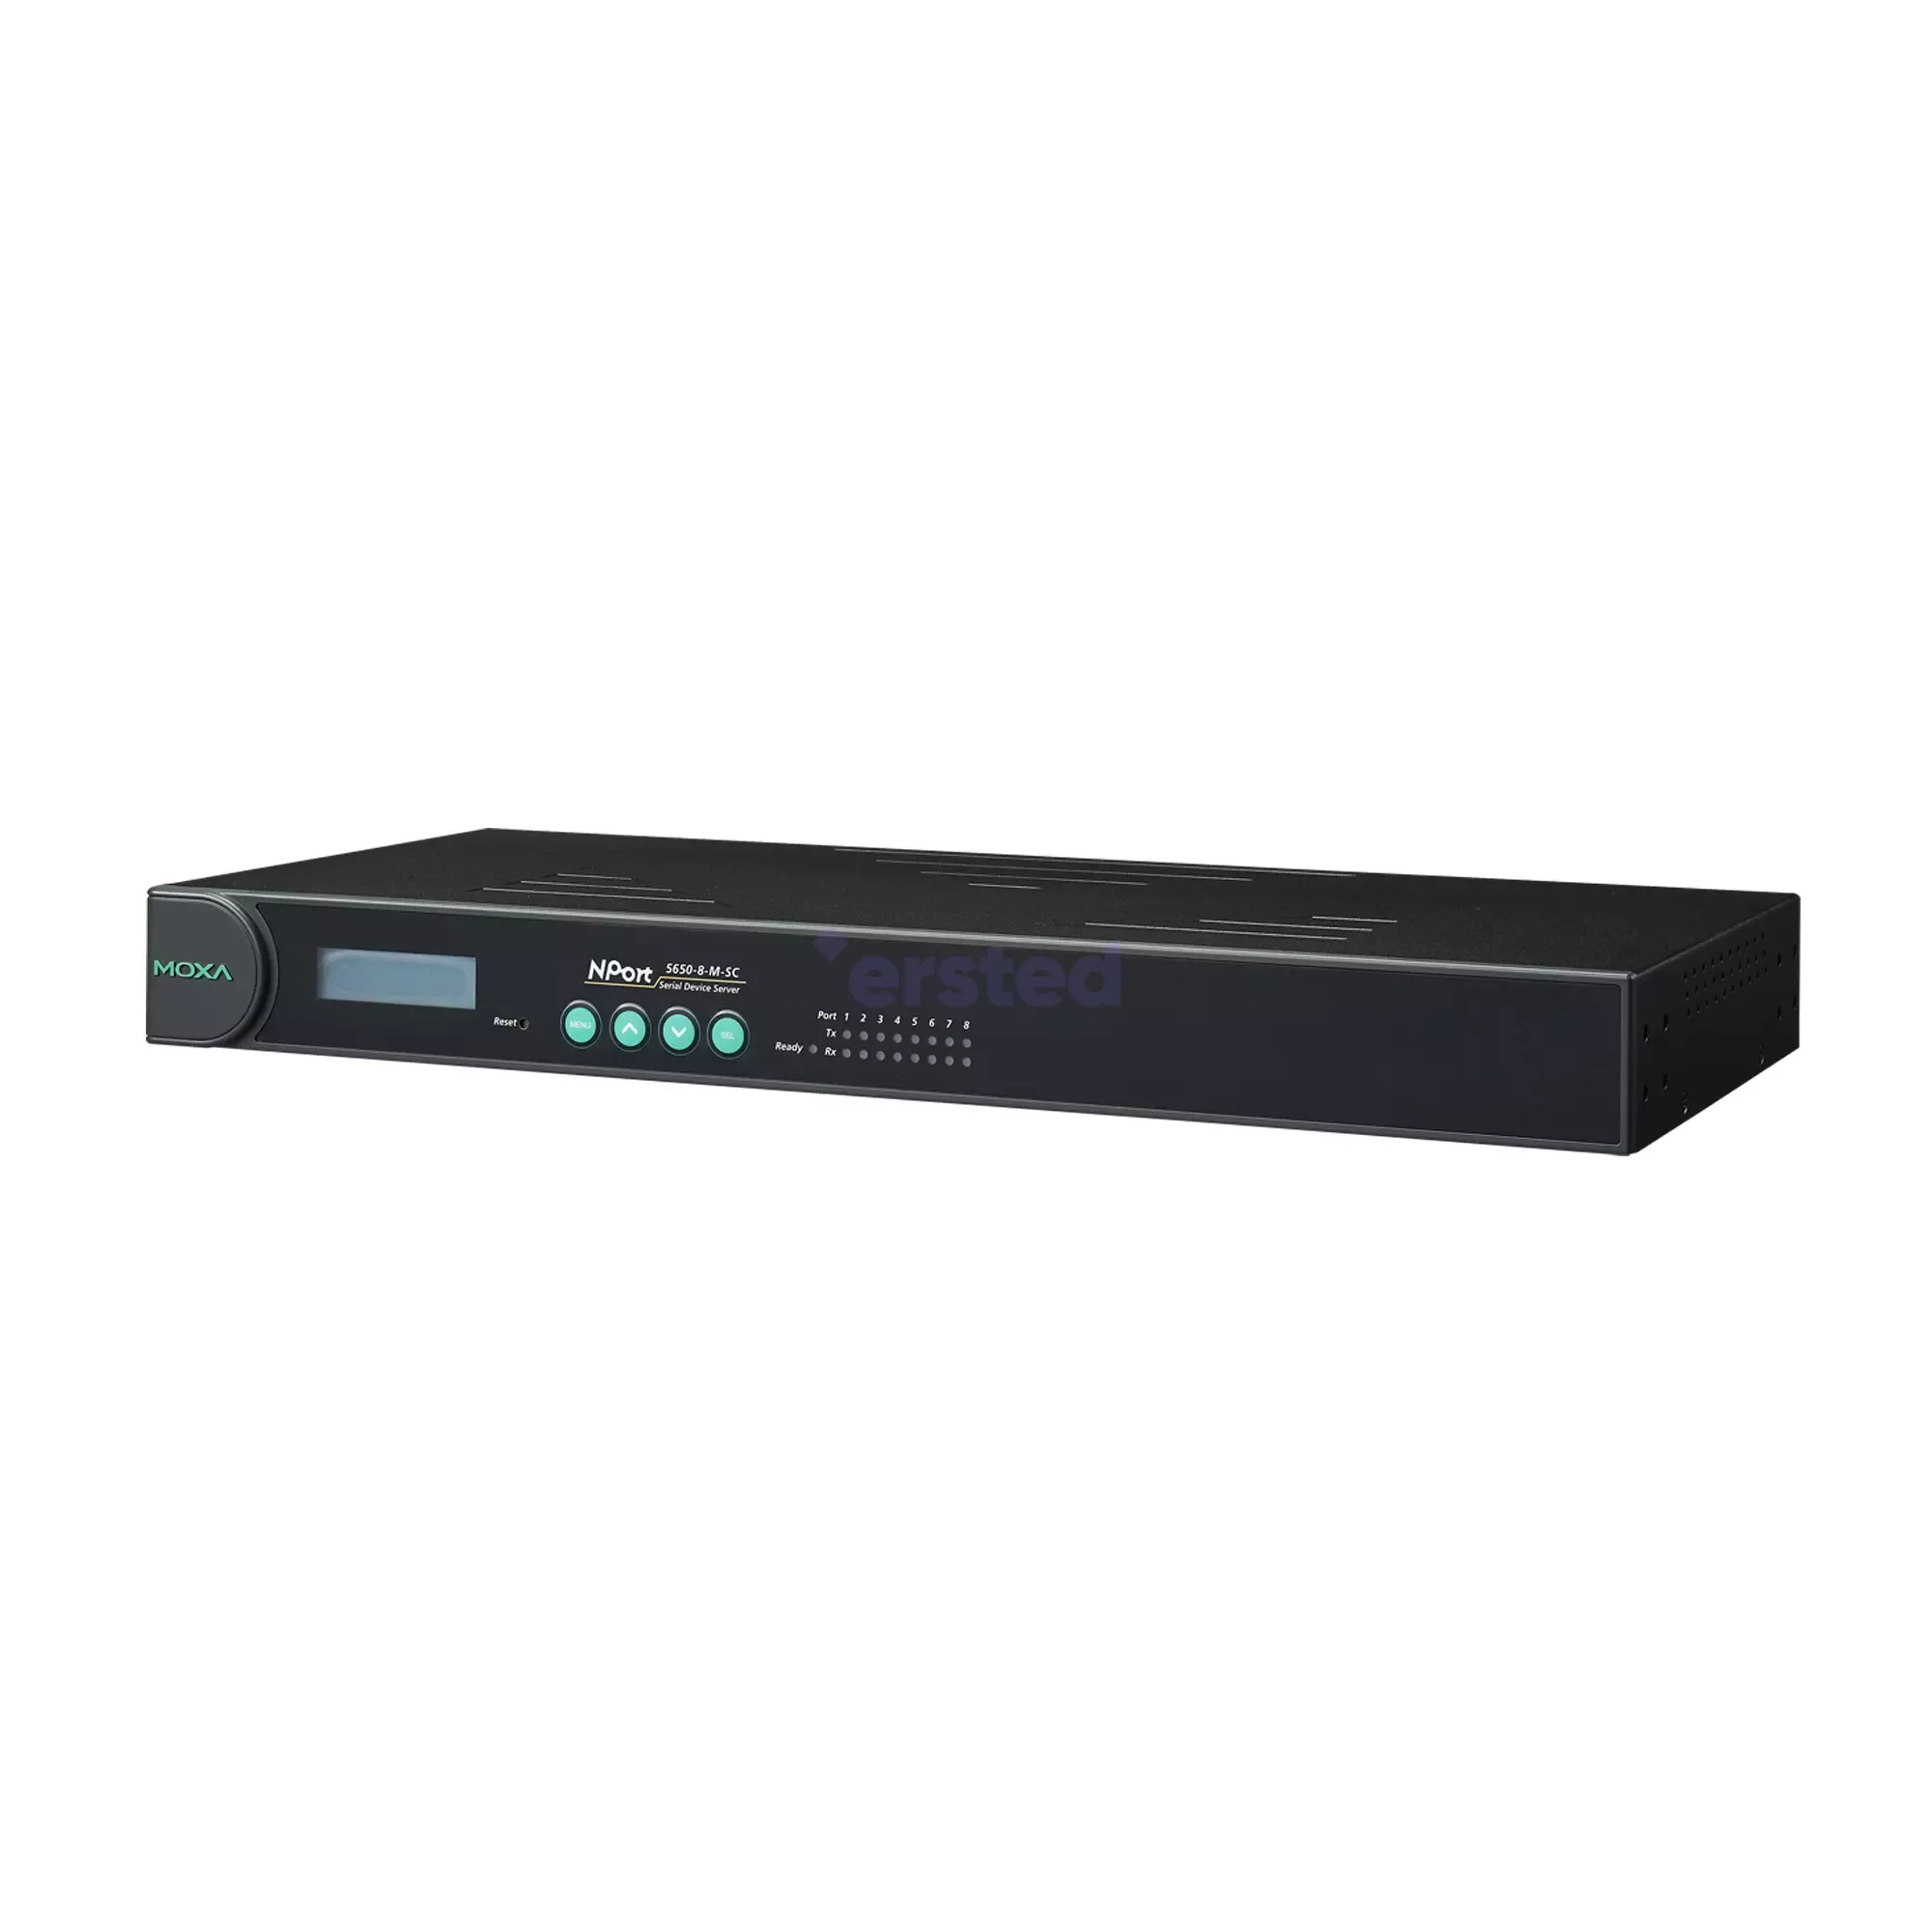 Moxa NPort 5650-8, Ethernet в 8хRS-232/485 Промышленный асинхронный клиент-сервер, фото 